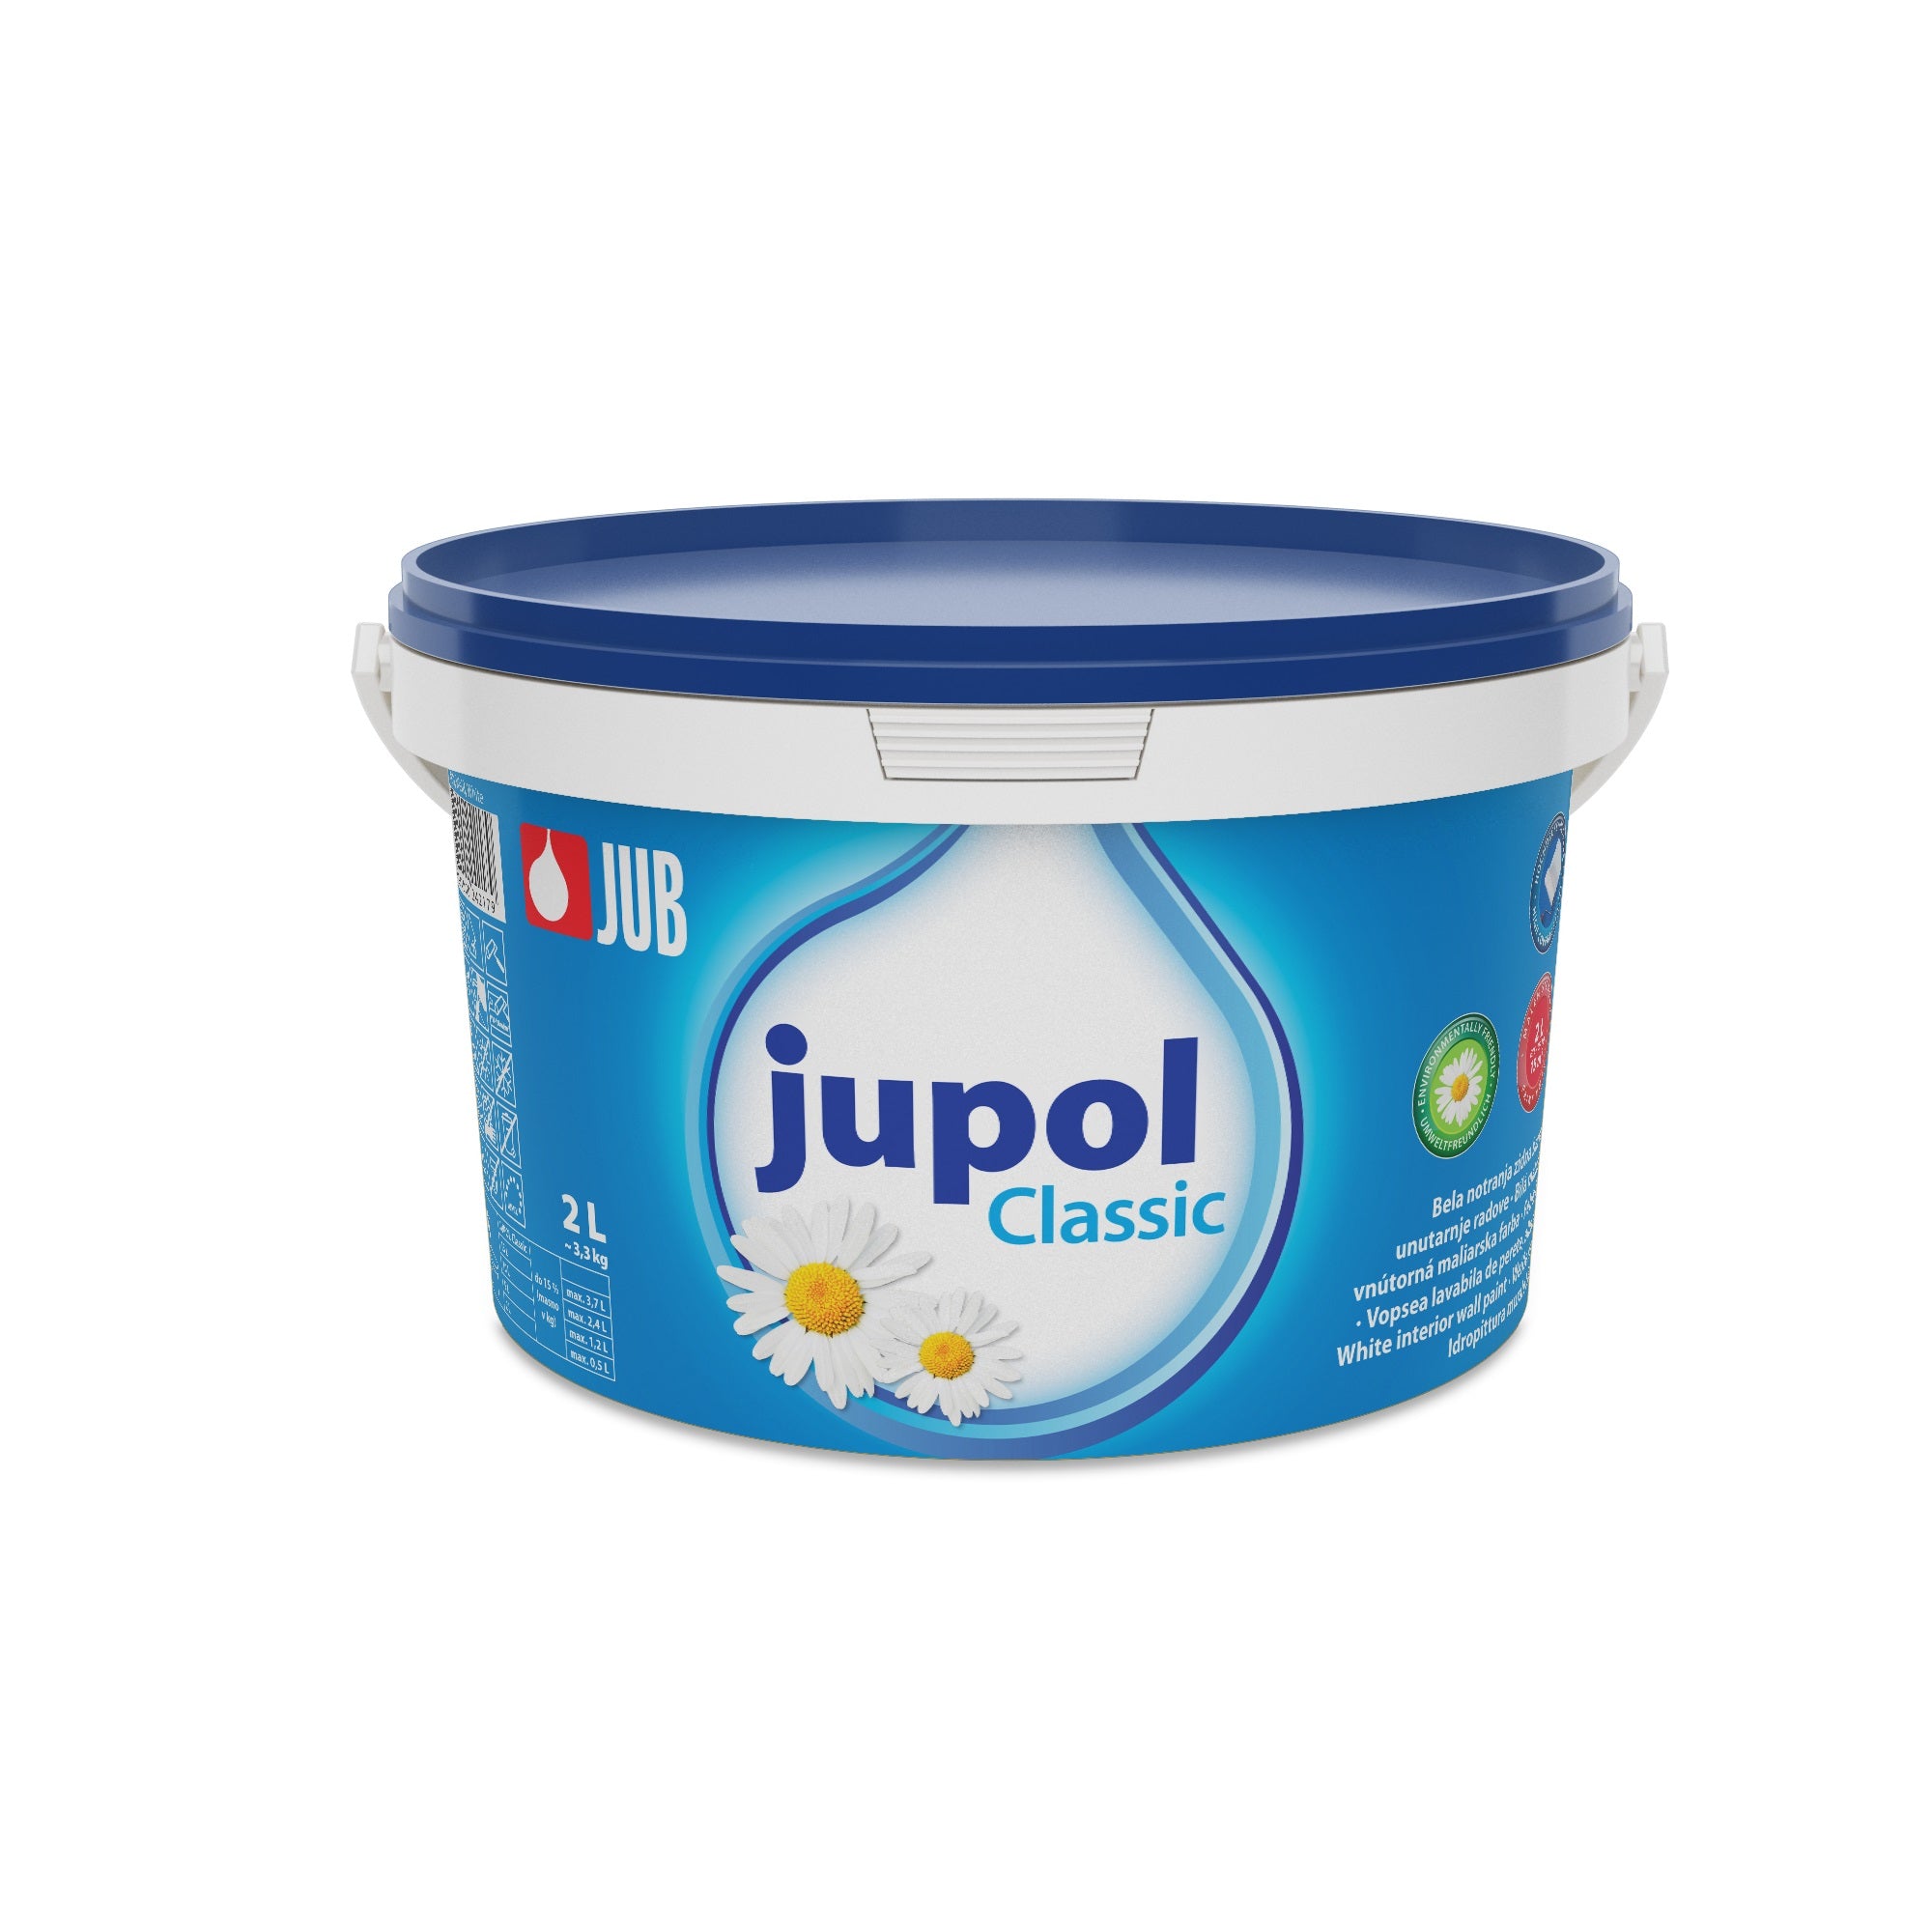 JUB JUPOL Classic bílá vnitřní malířská barva 2 l